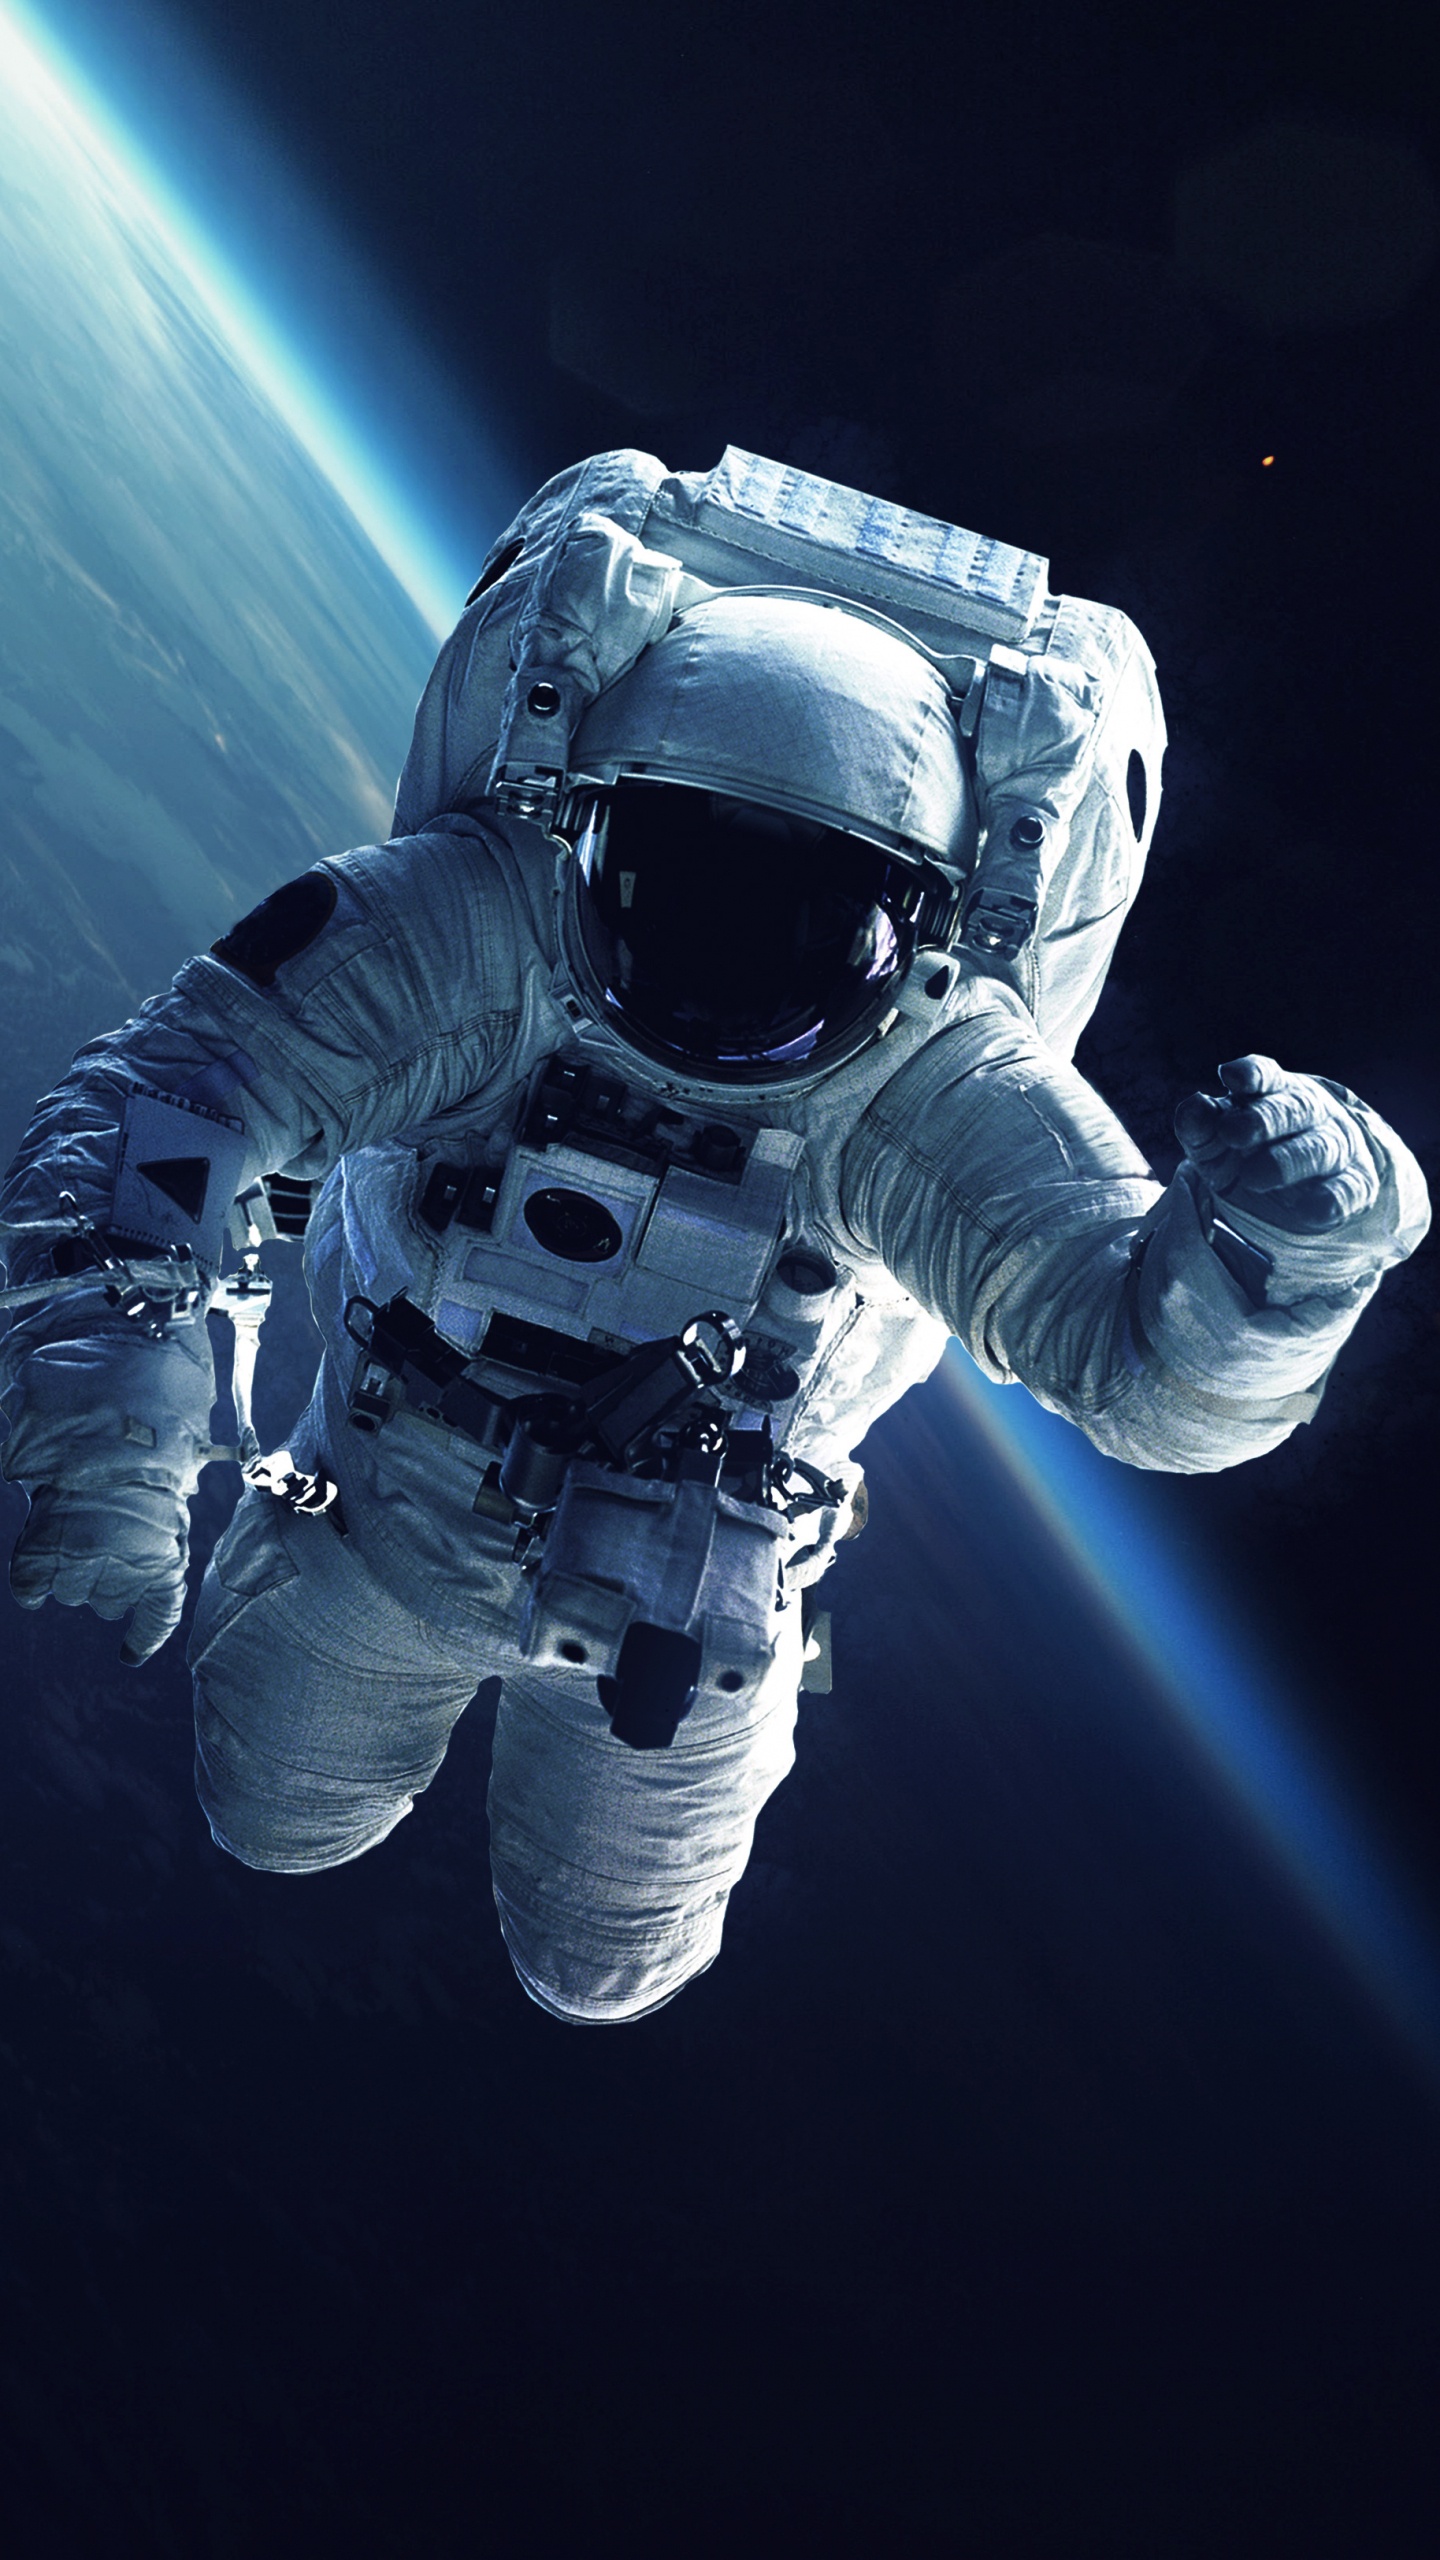 国际空间站, 宇航员, 美国宇航局, 空间探索, 外层空间 壁纸 1440x2560 允许